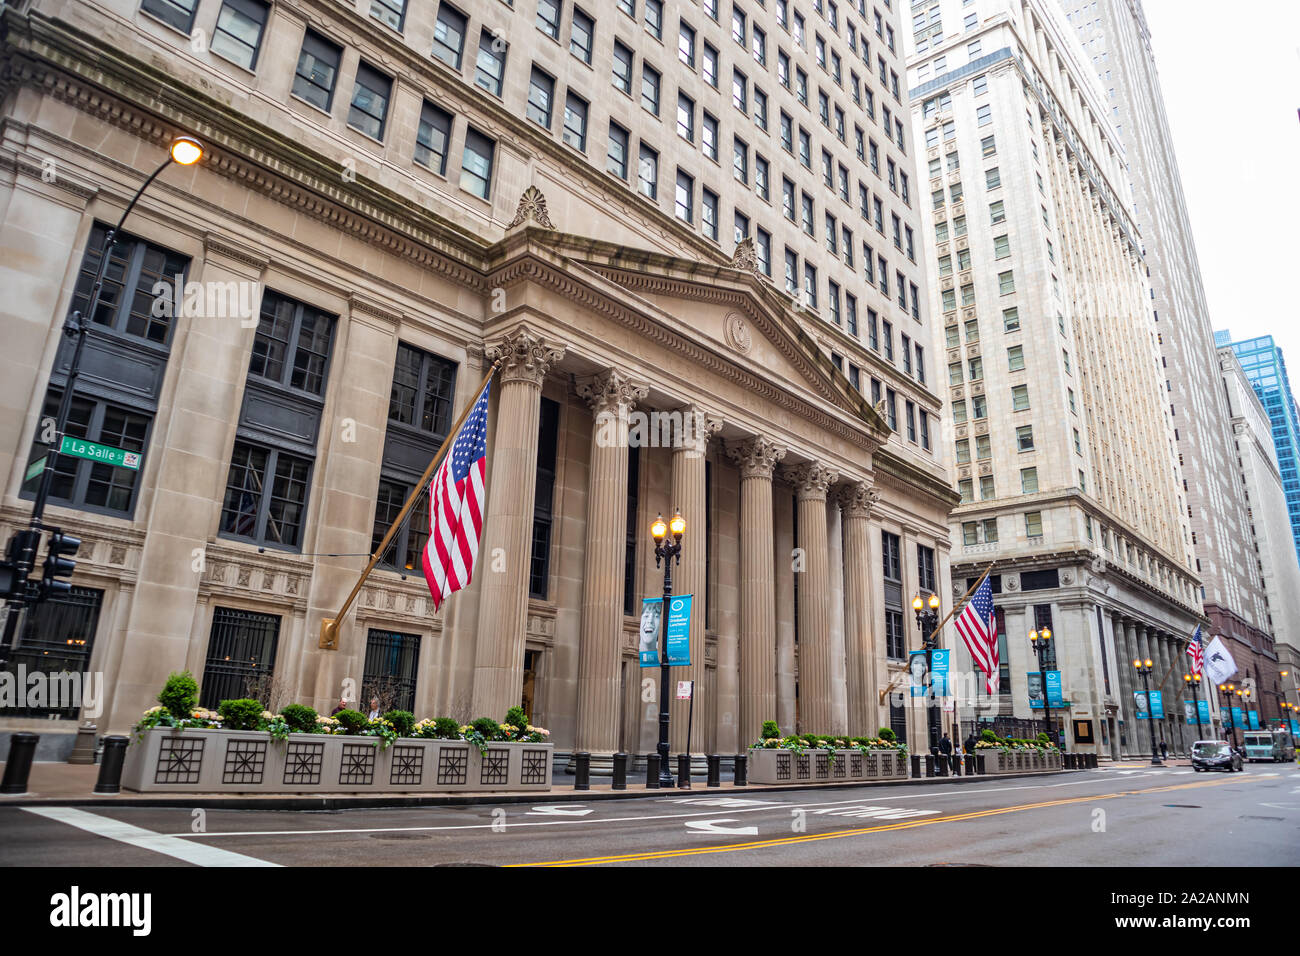 Chicago, Illinois, USA. Mai 9, 2019. Seitenansicht der Federal Reserve Bank of Chicago. Gebäude aus Stein mit korinthischen Säulengängen Hintergrund. Stockfoto